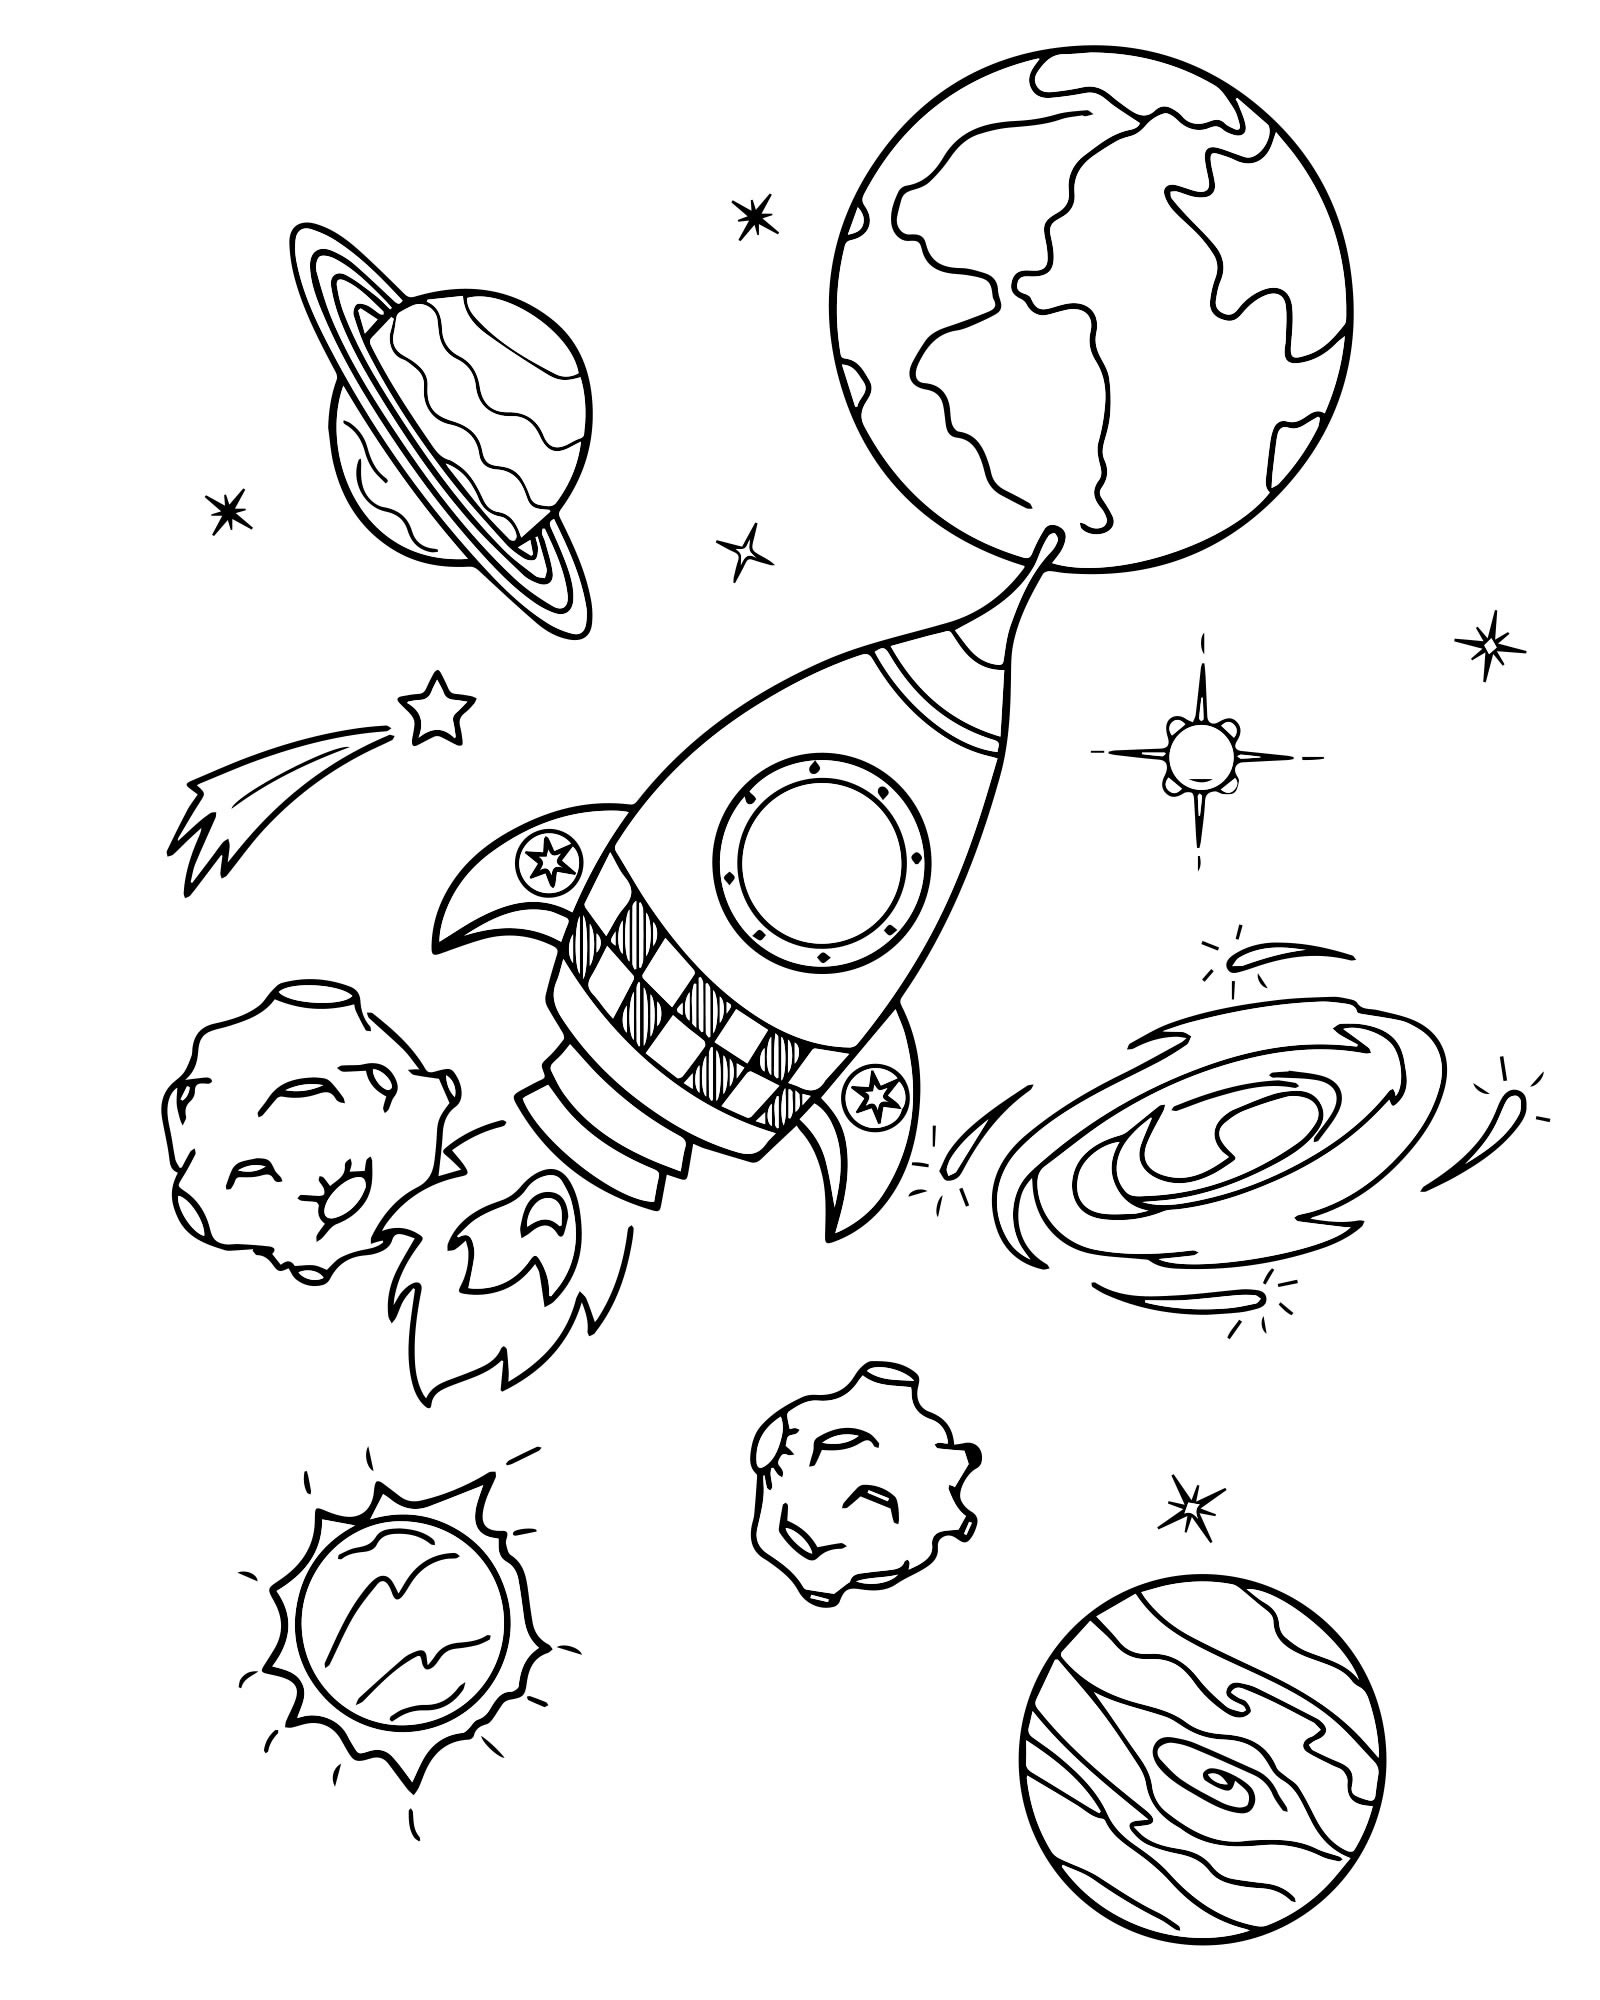 Планеты для раскрашивания. Космос раскраска для детей. Раскраска. В космосе. Раскраска космос и планеты для детей. Раскраска для малышей. Космос.